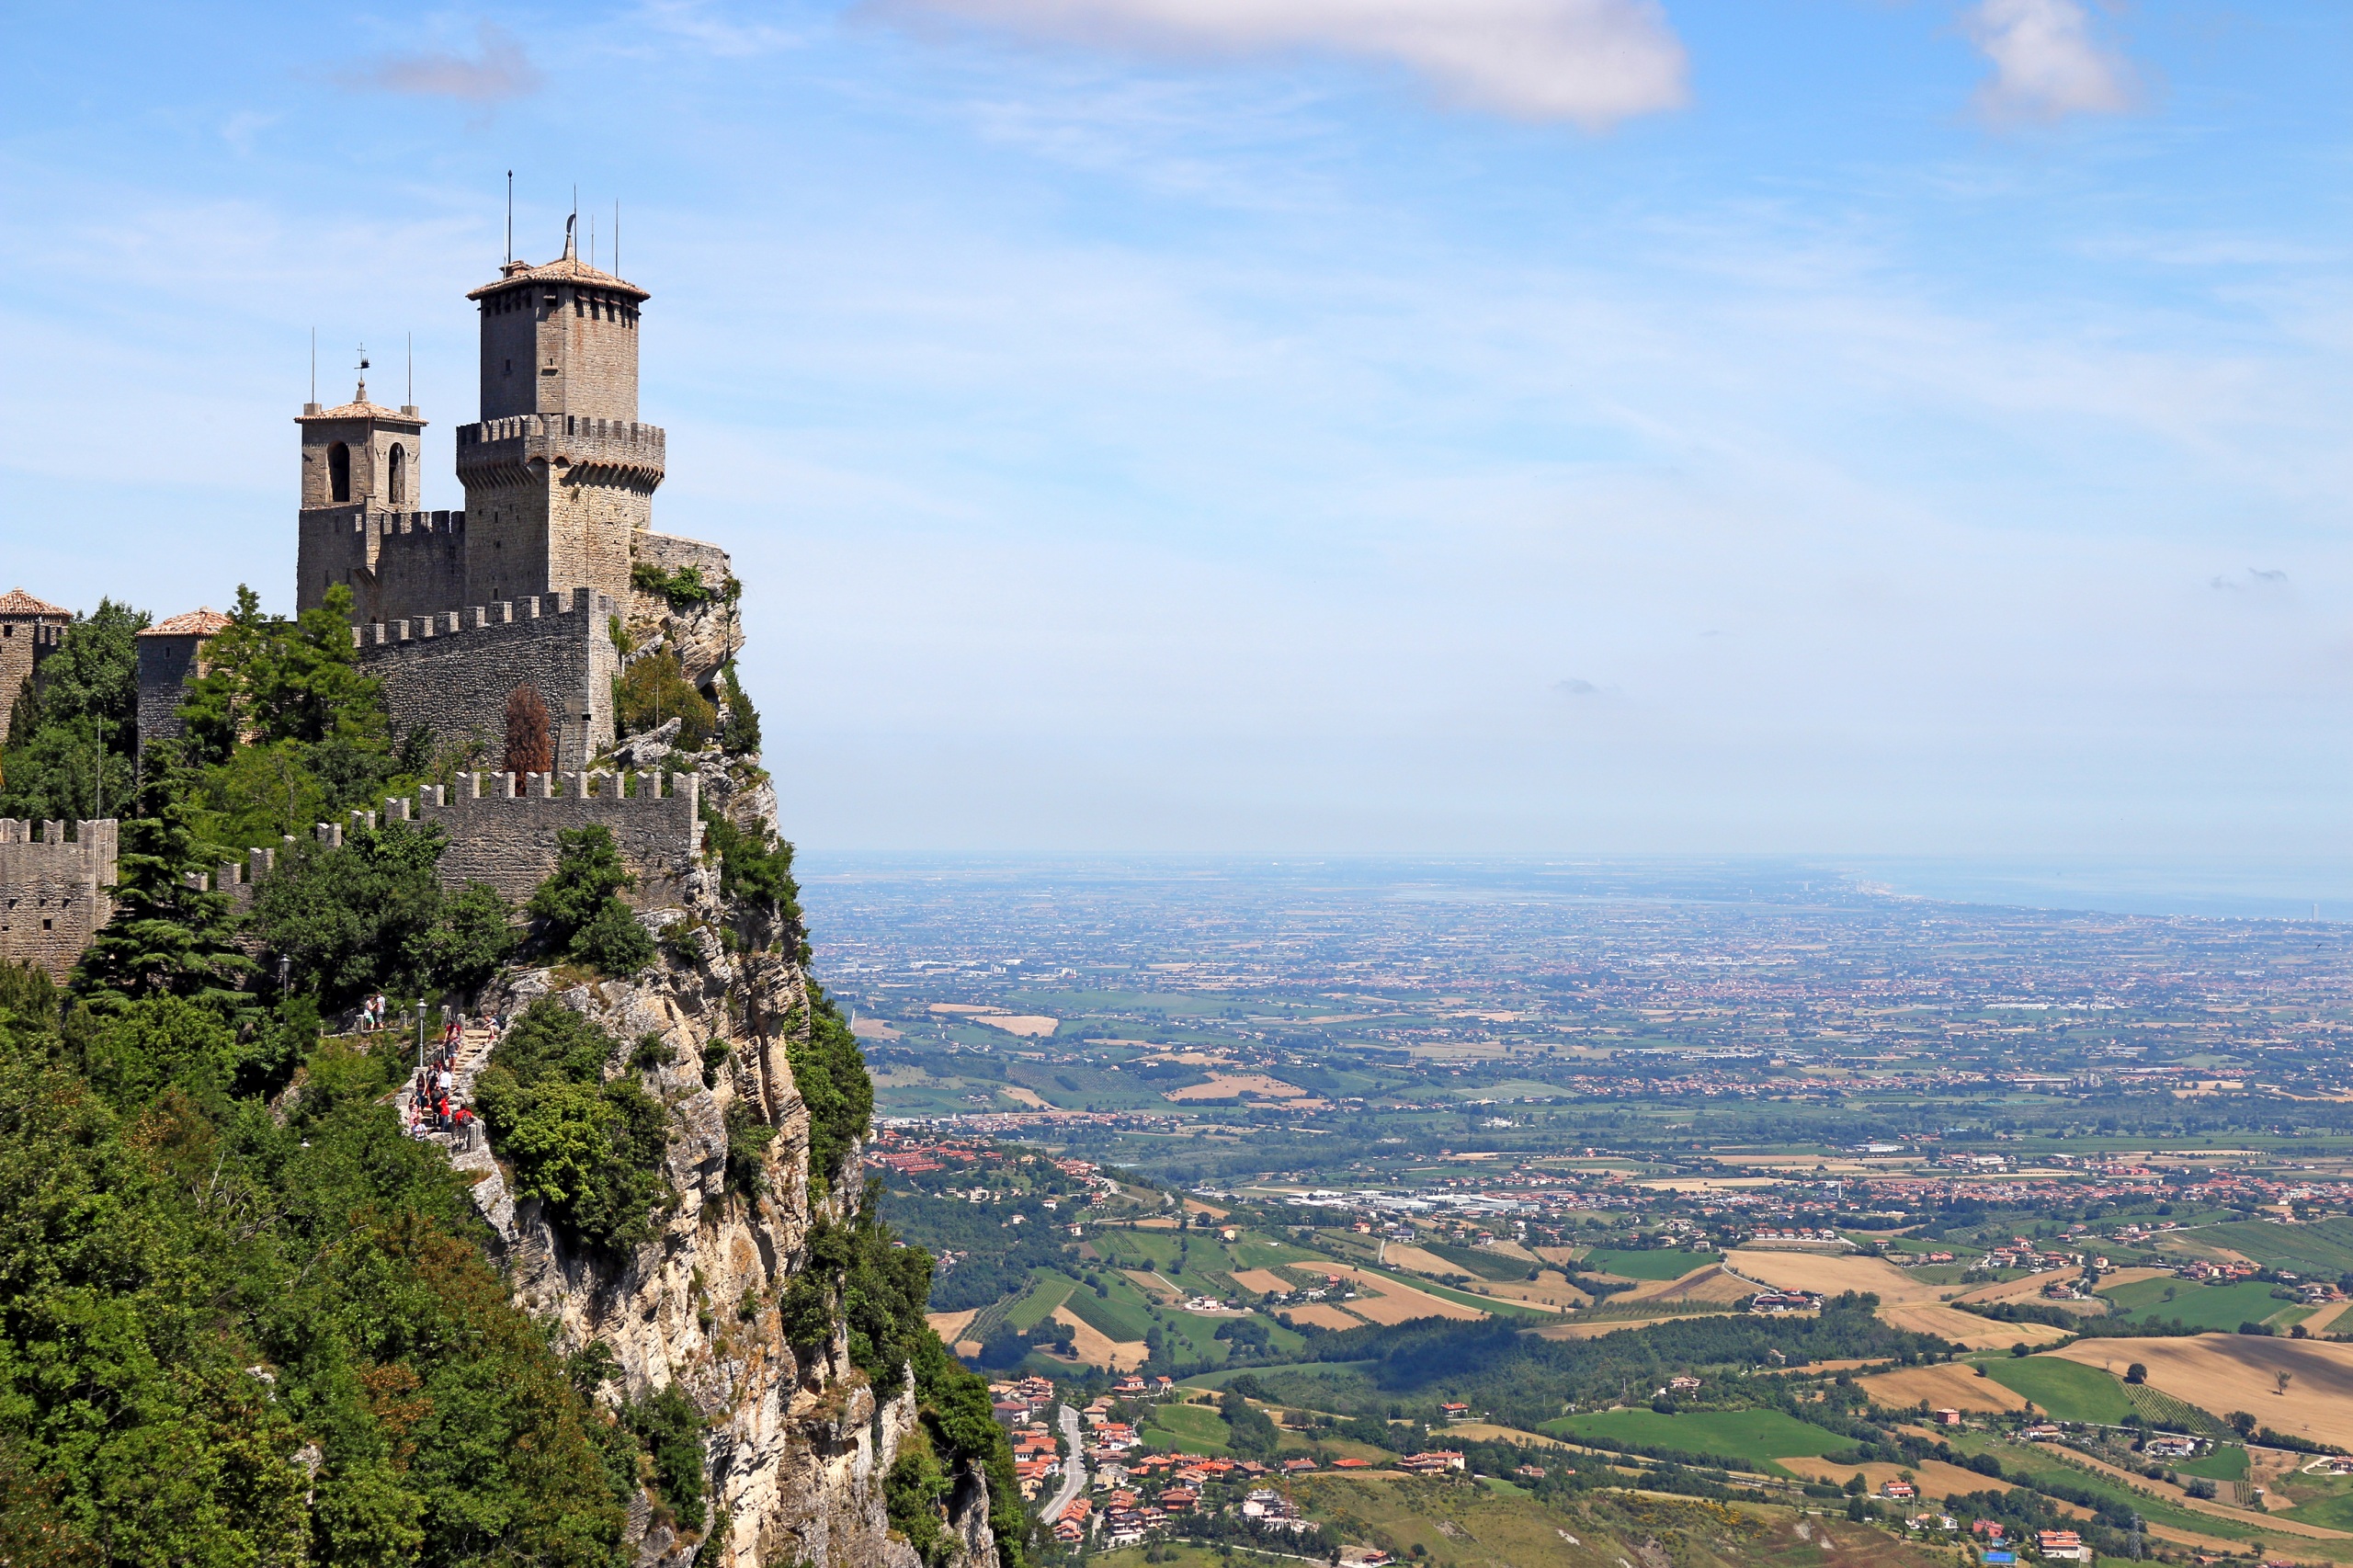 عکس برای استوری از قلعه ی سنگی بر روی کوه مرتفع و سبز